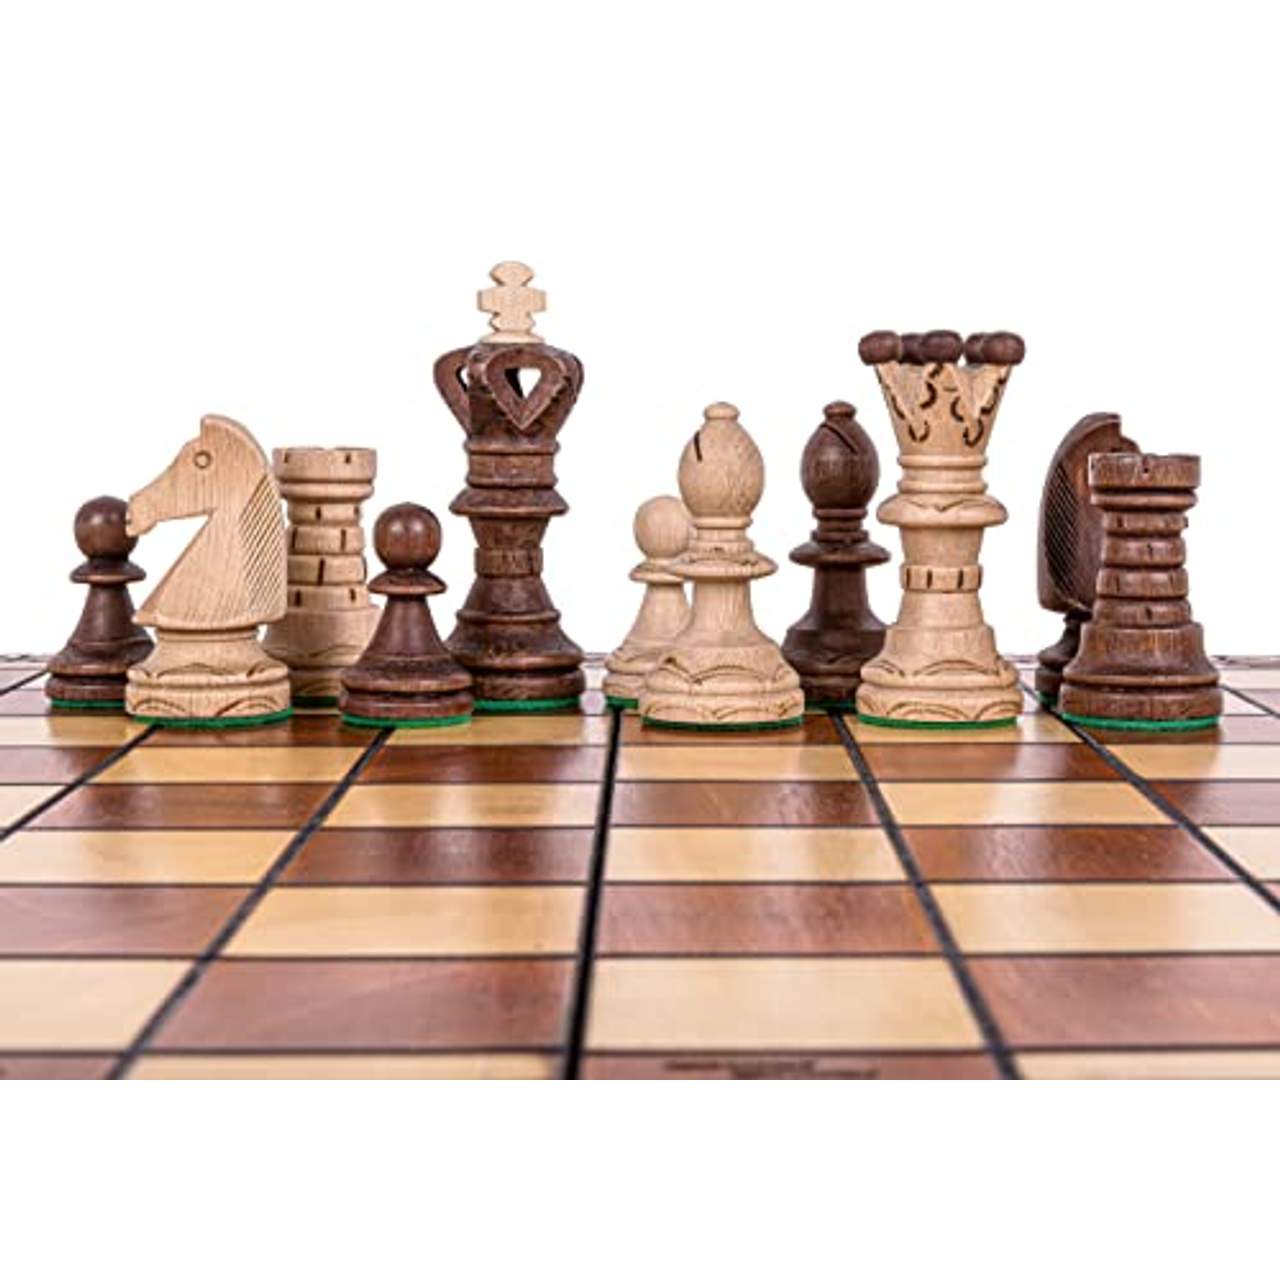 Square Schach Schachspiel Ambasador LUX